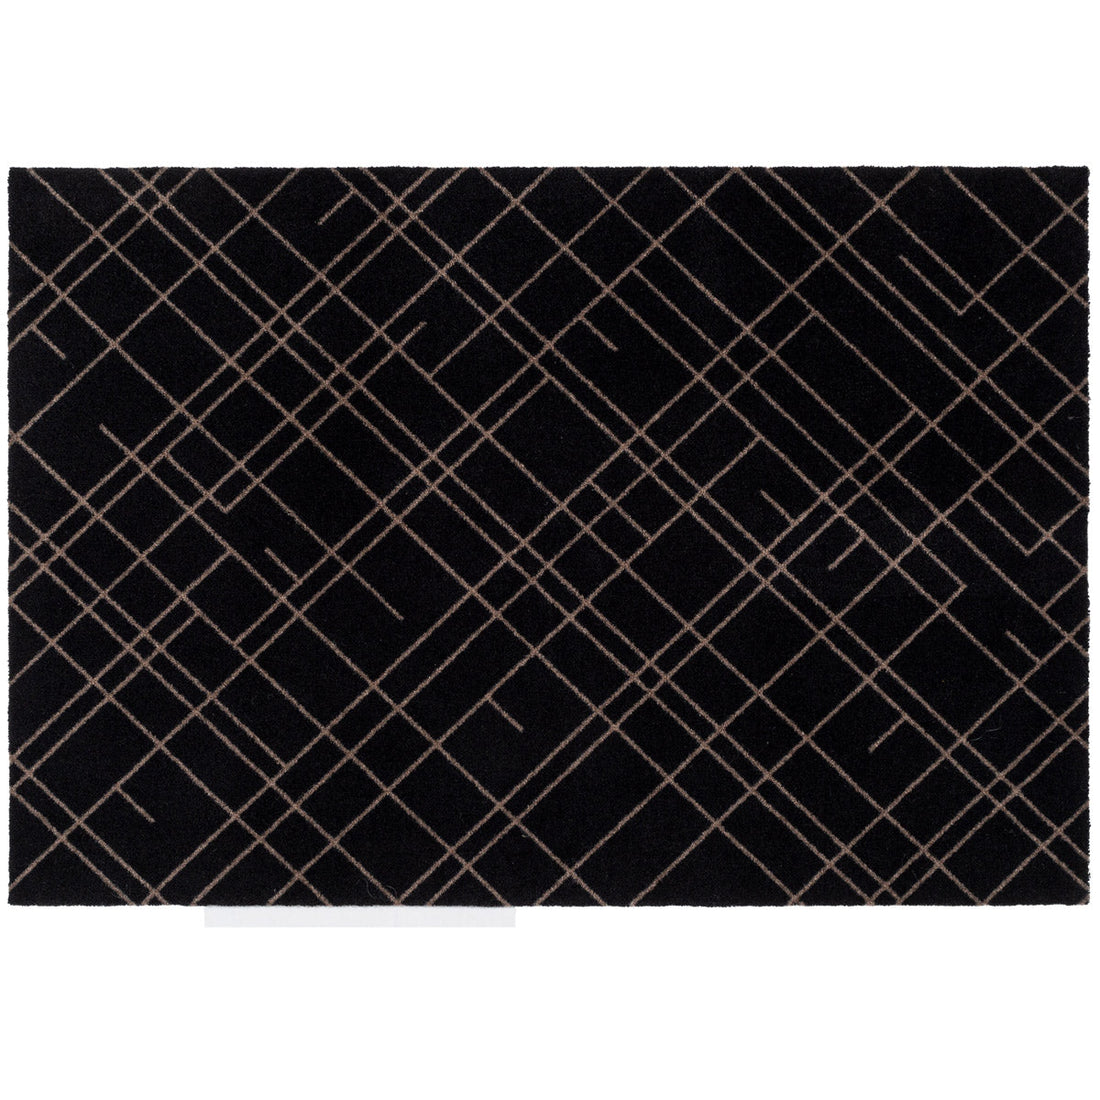 Bodenmatte 90 x 130 cm - Linien/Sandschwarz